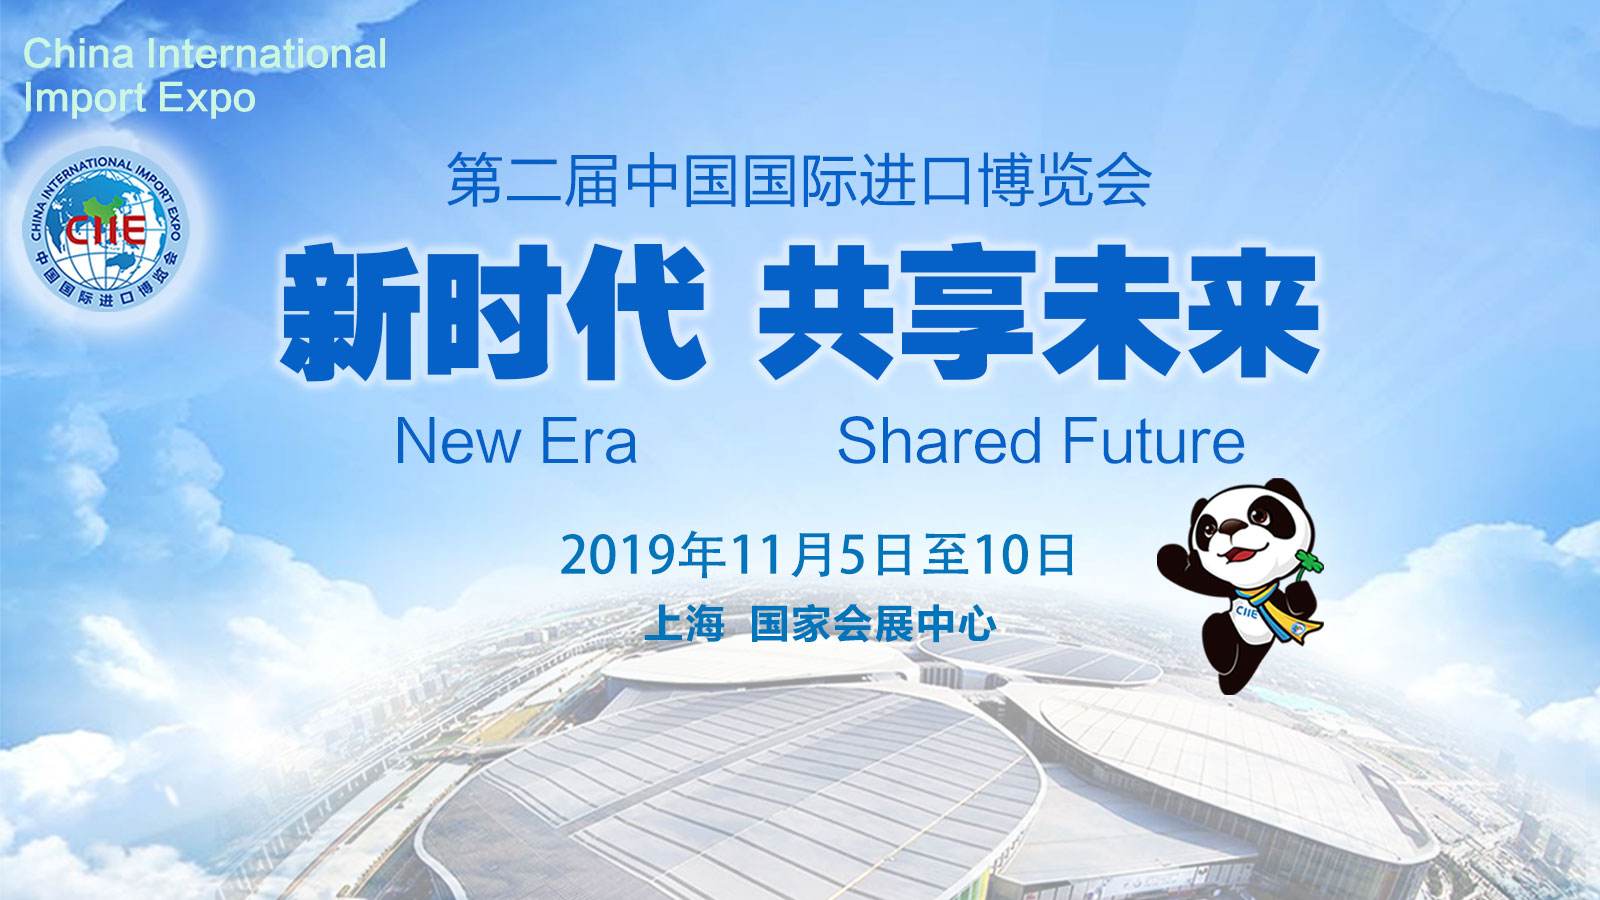 中国更开放 世界期待第二届中国国际进口博览会